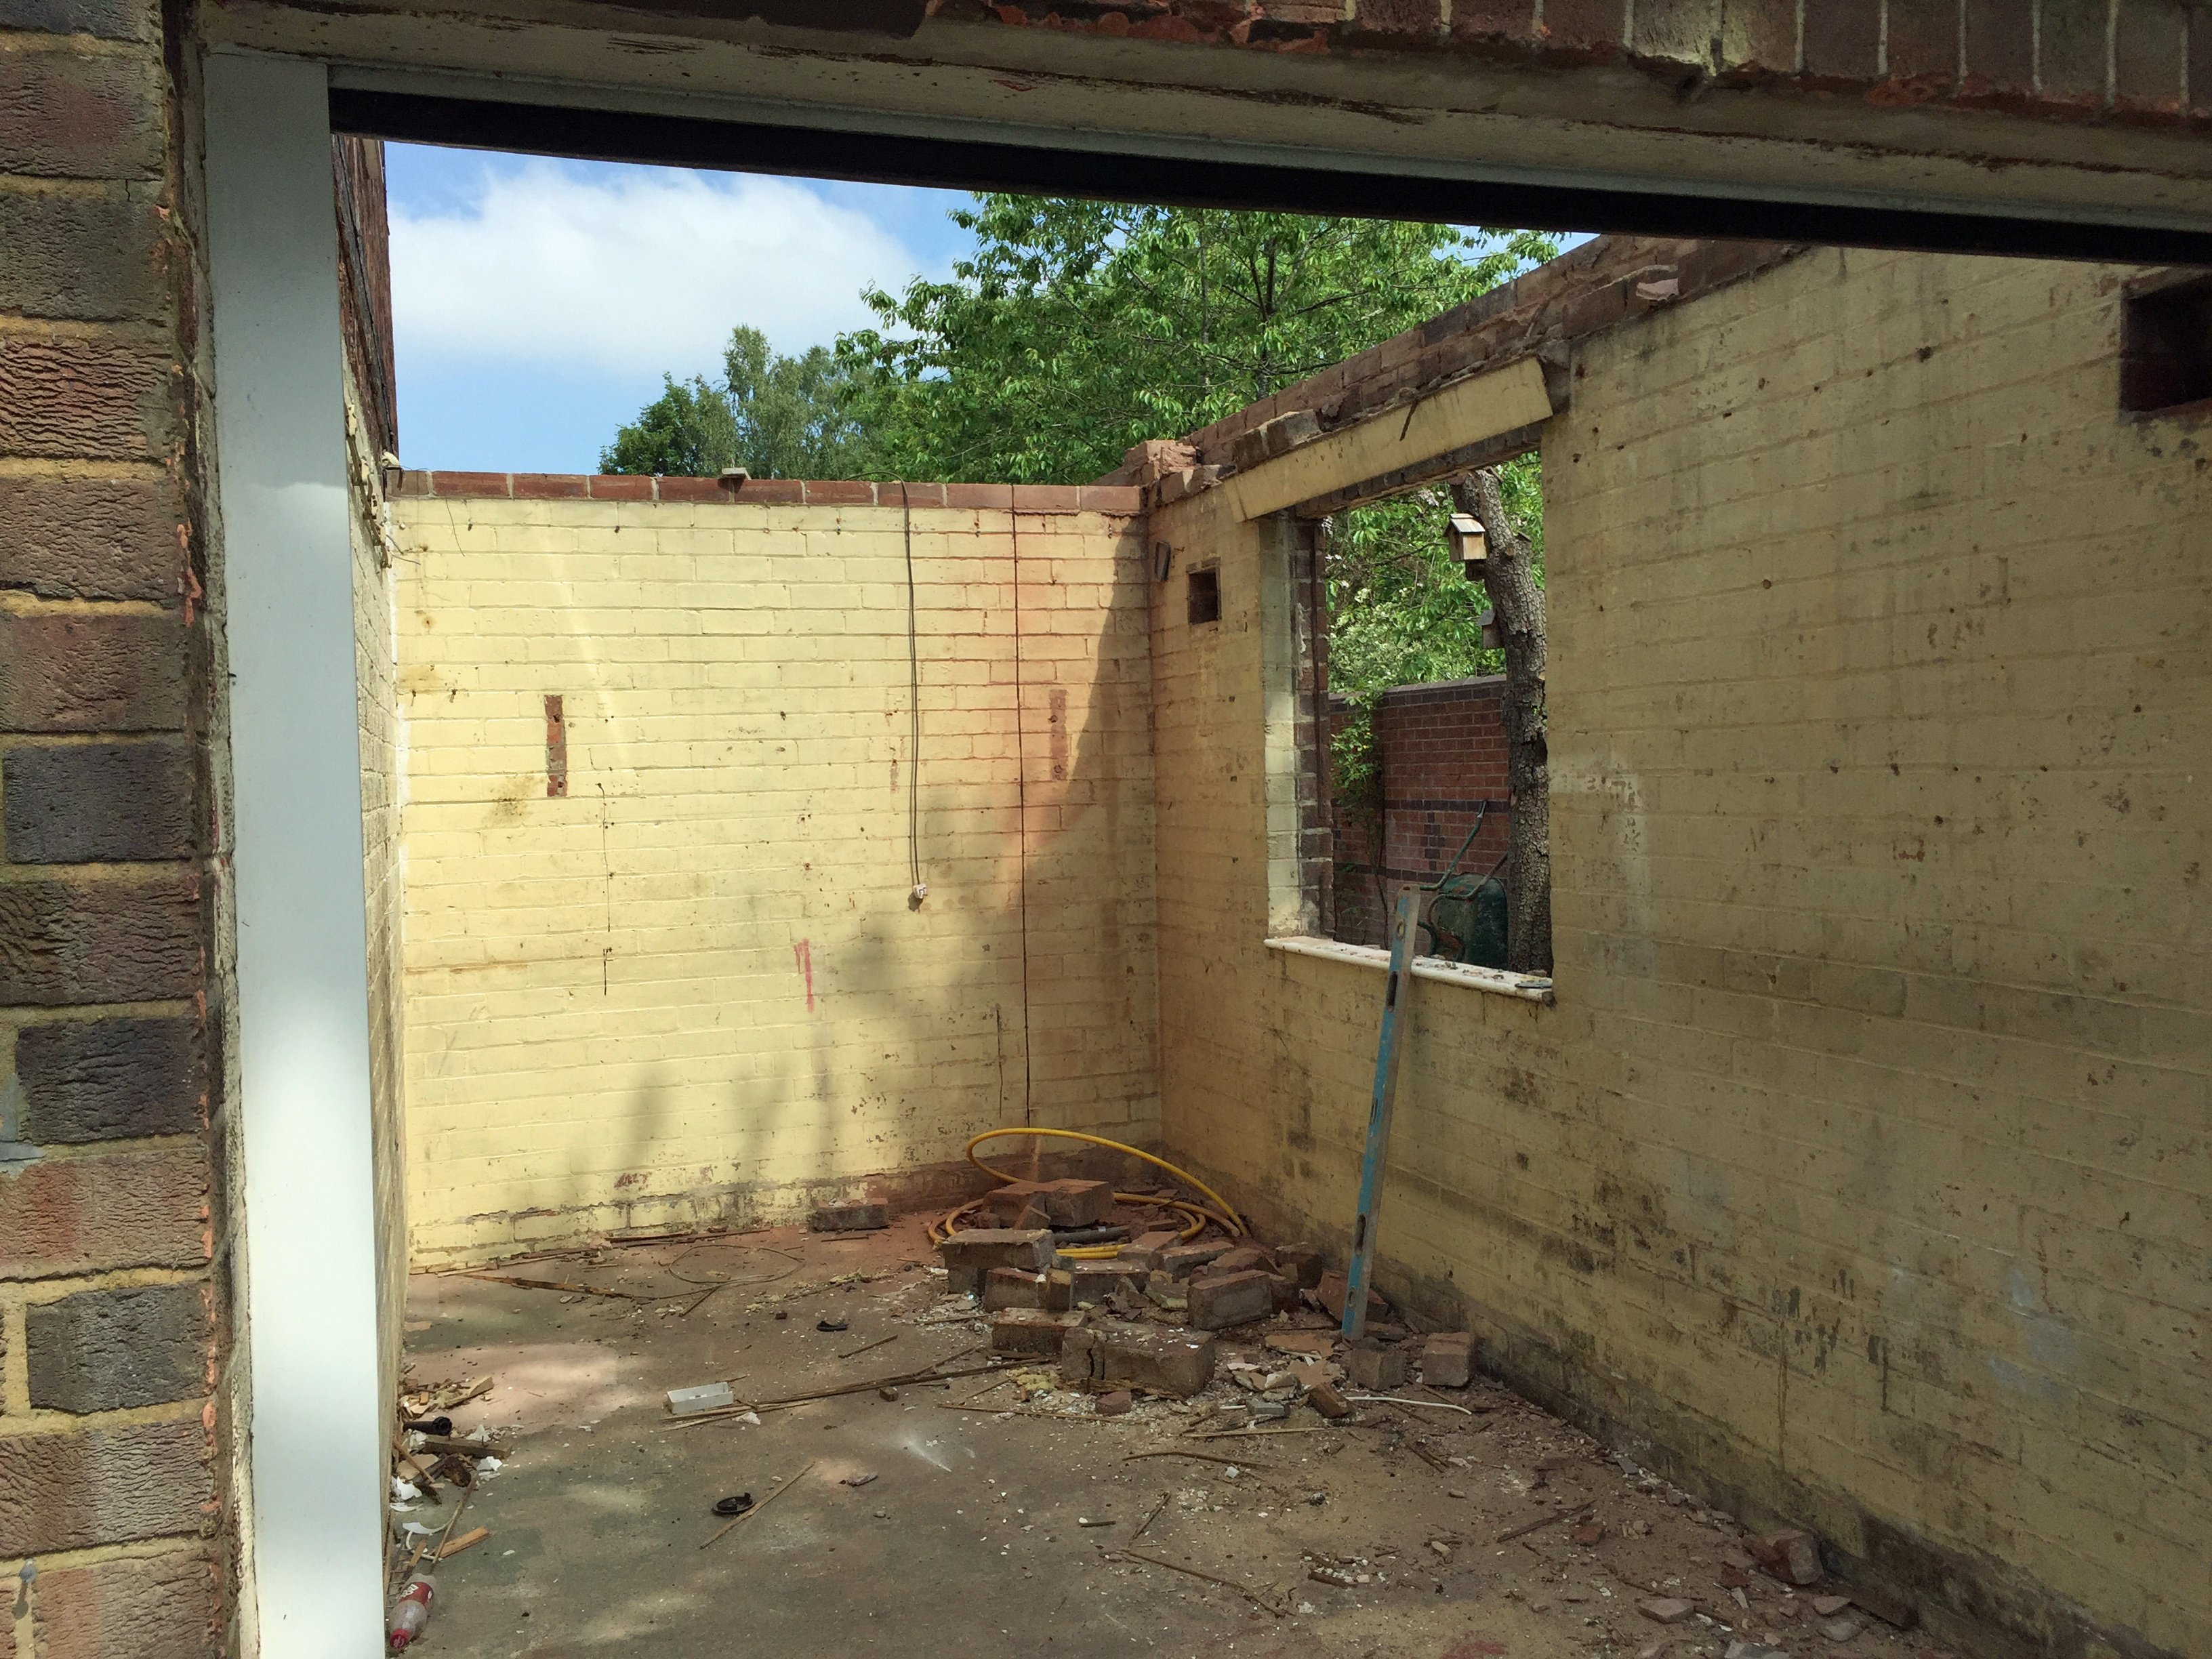 Home renovation blog: Demolition begins